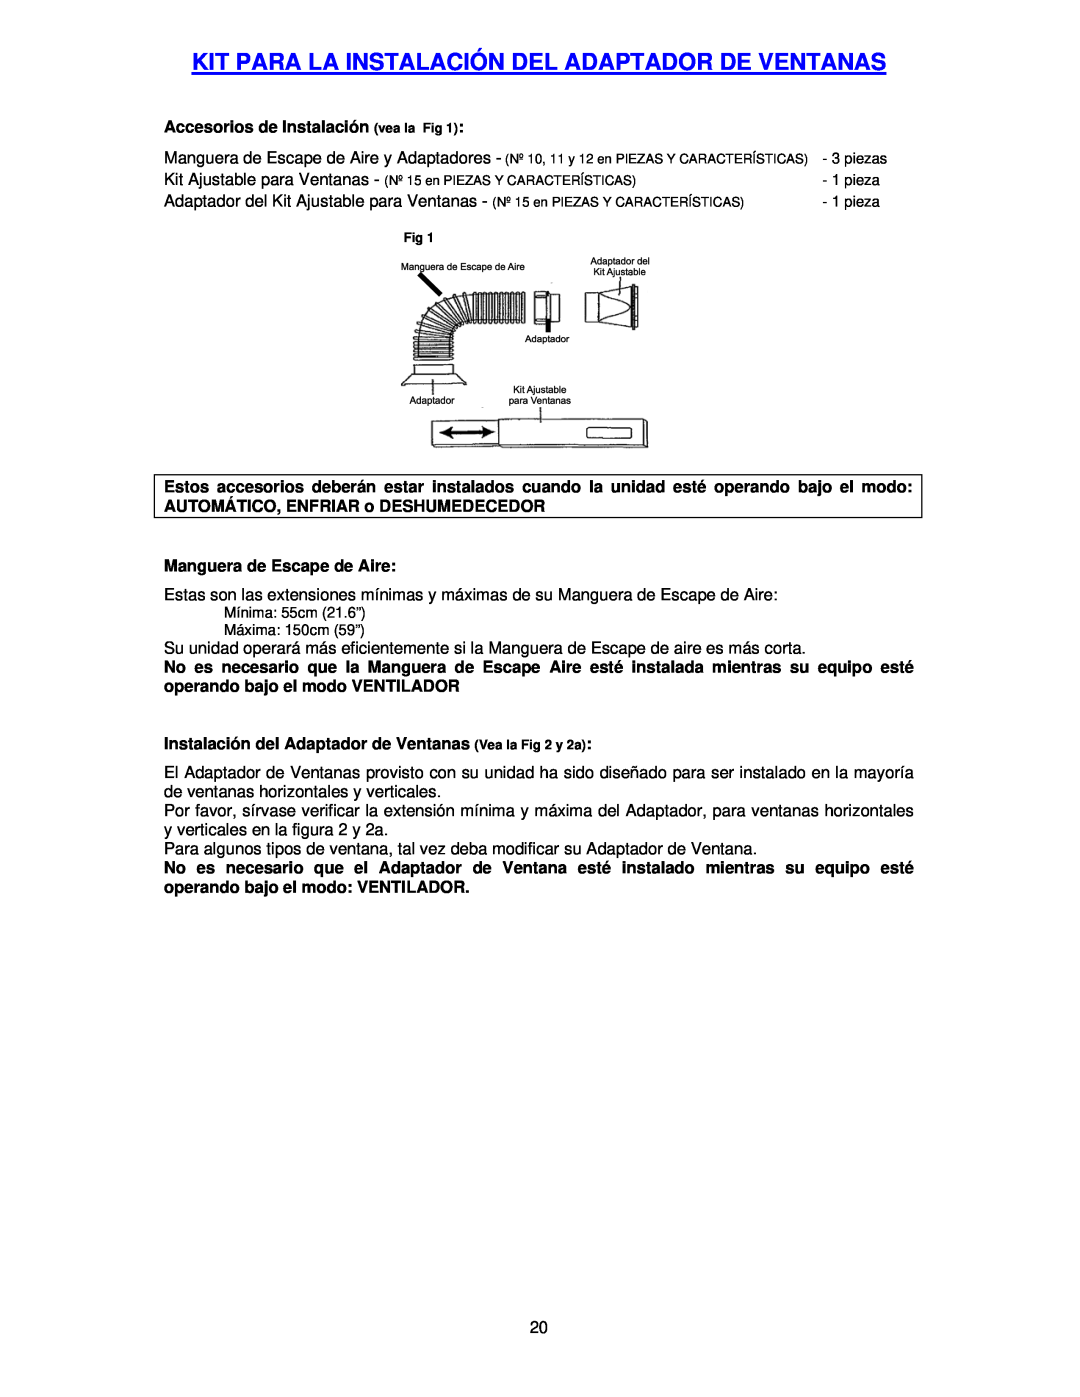 Avanti PAC12000 instruction manual Kit Para La Instalación Del Adaptador De Ventanas, Accesorios de Instalación vea la Fig 